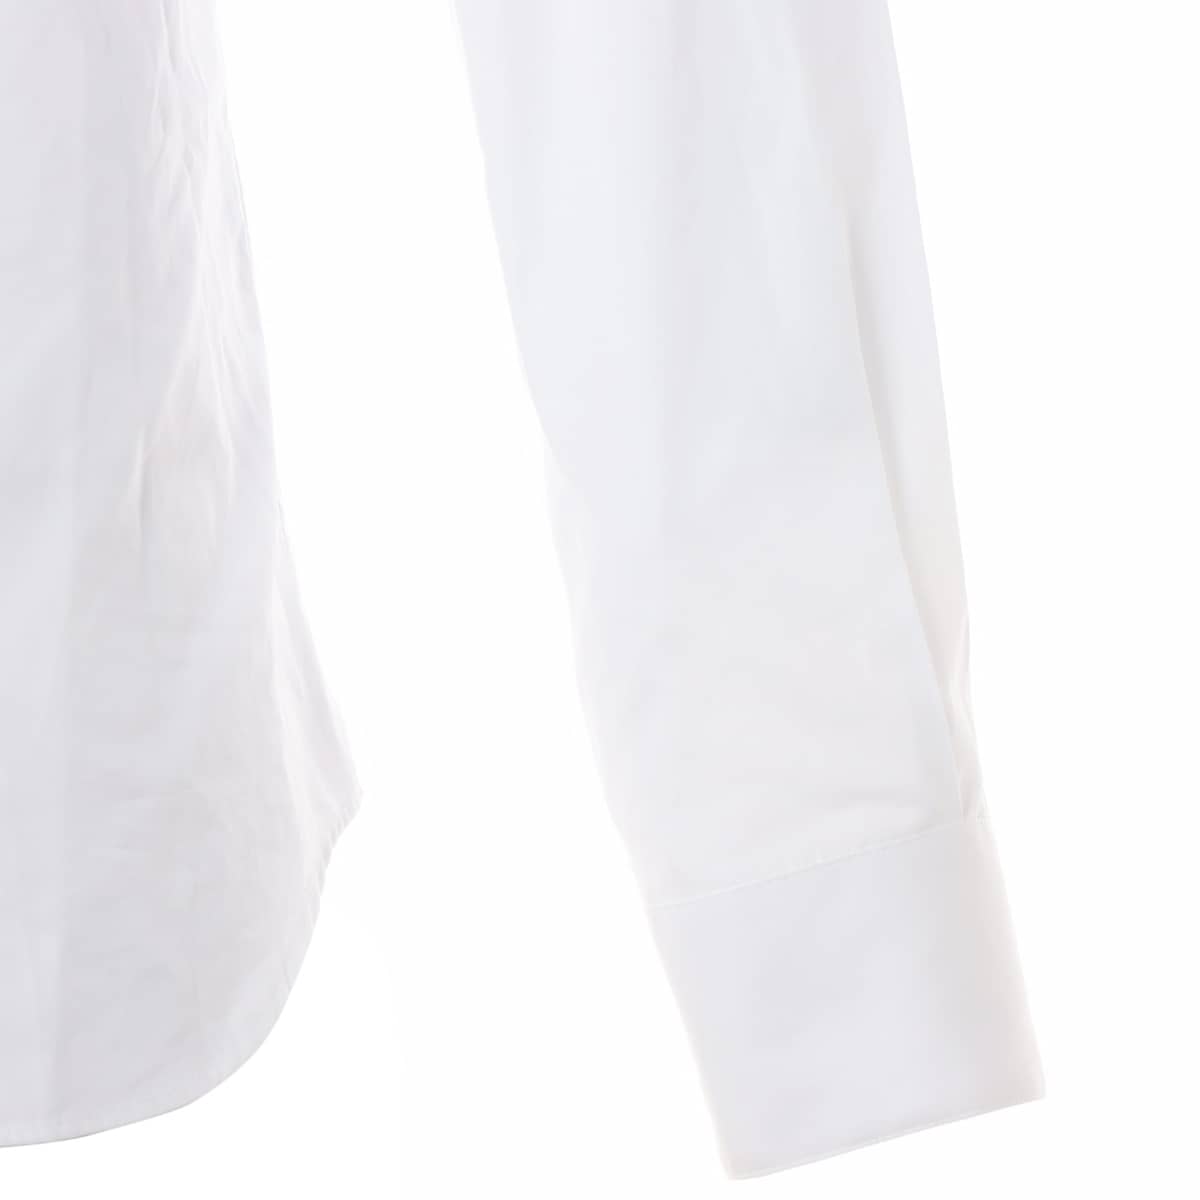 ディオール×ピータードイグ コットン シャツ 38 メンズ ホワイト  143C592A1581 ロゴ刺繍